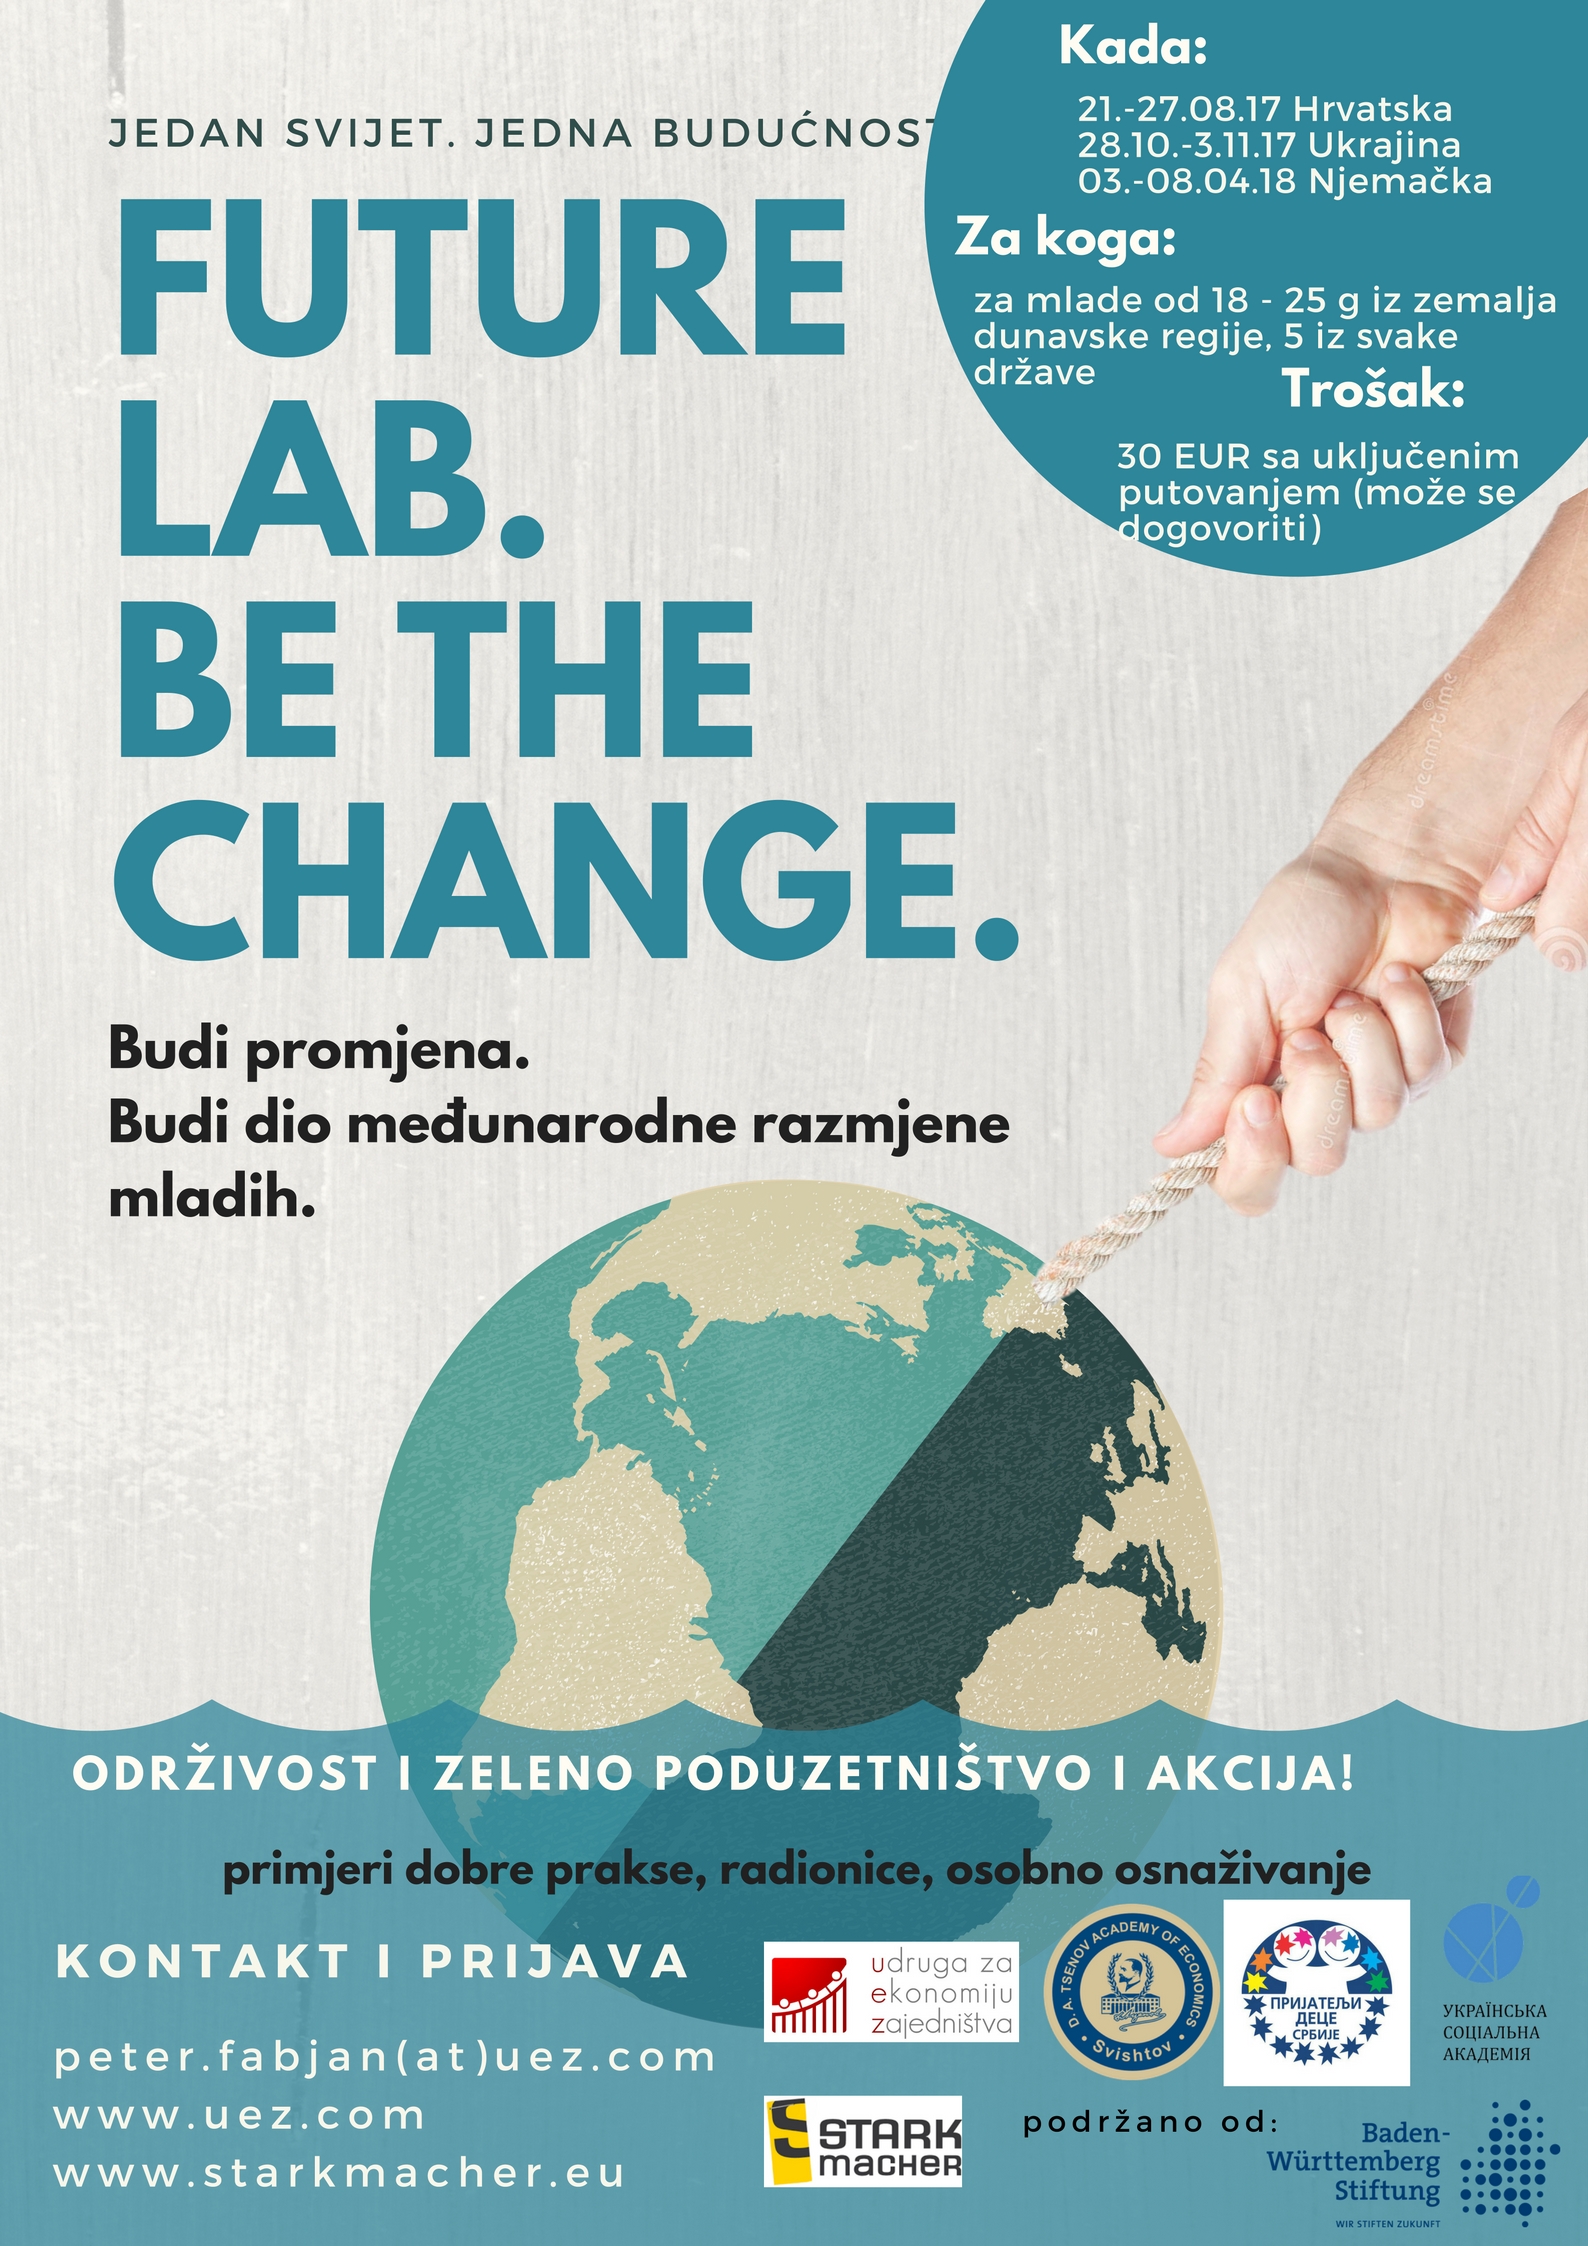 Future Lab - budi promjena, projekt međunarodne razmjene mladih